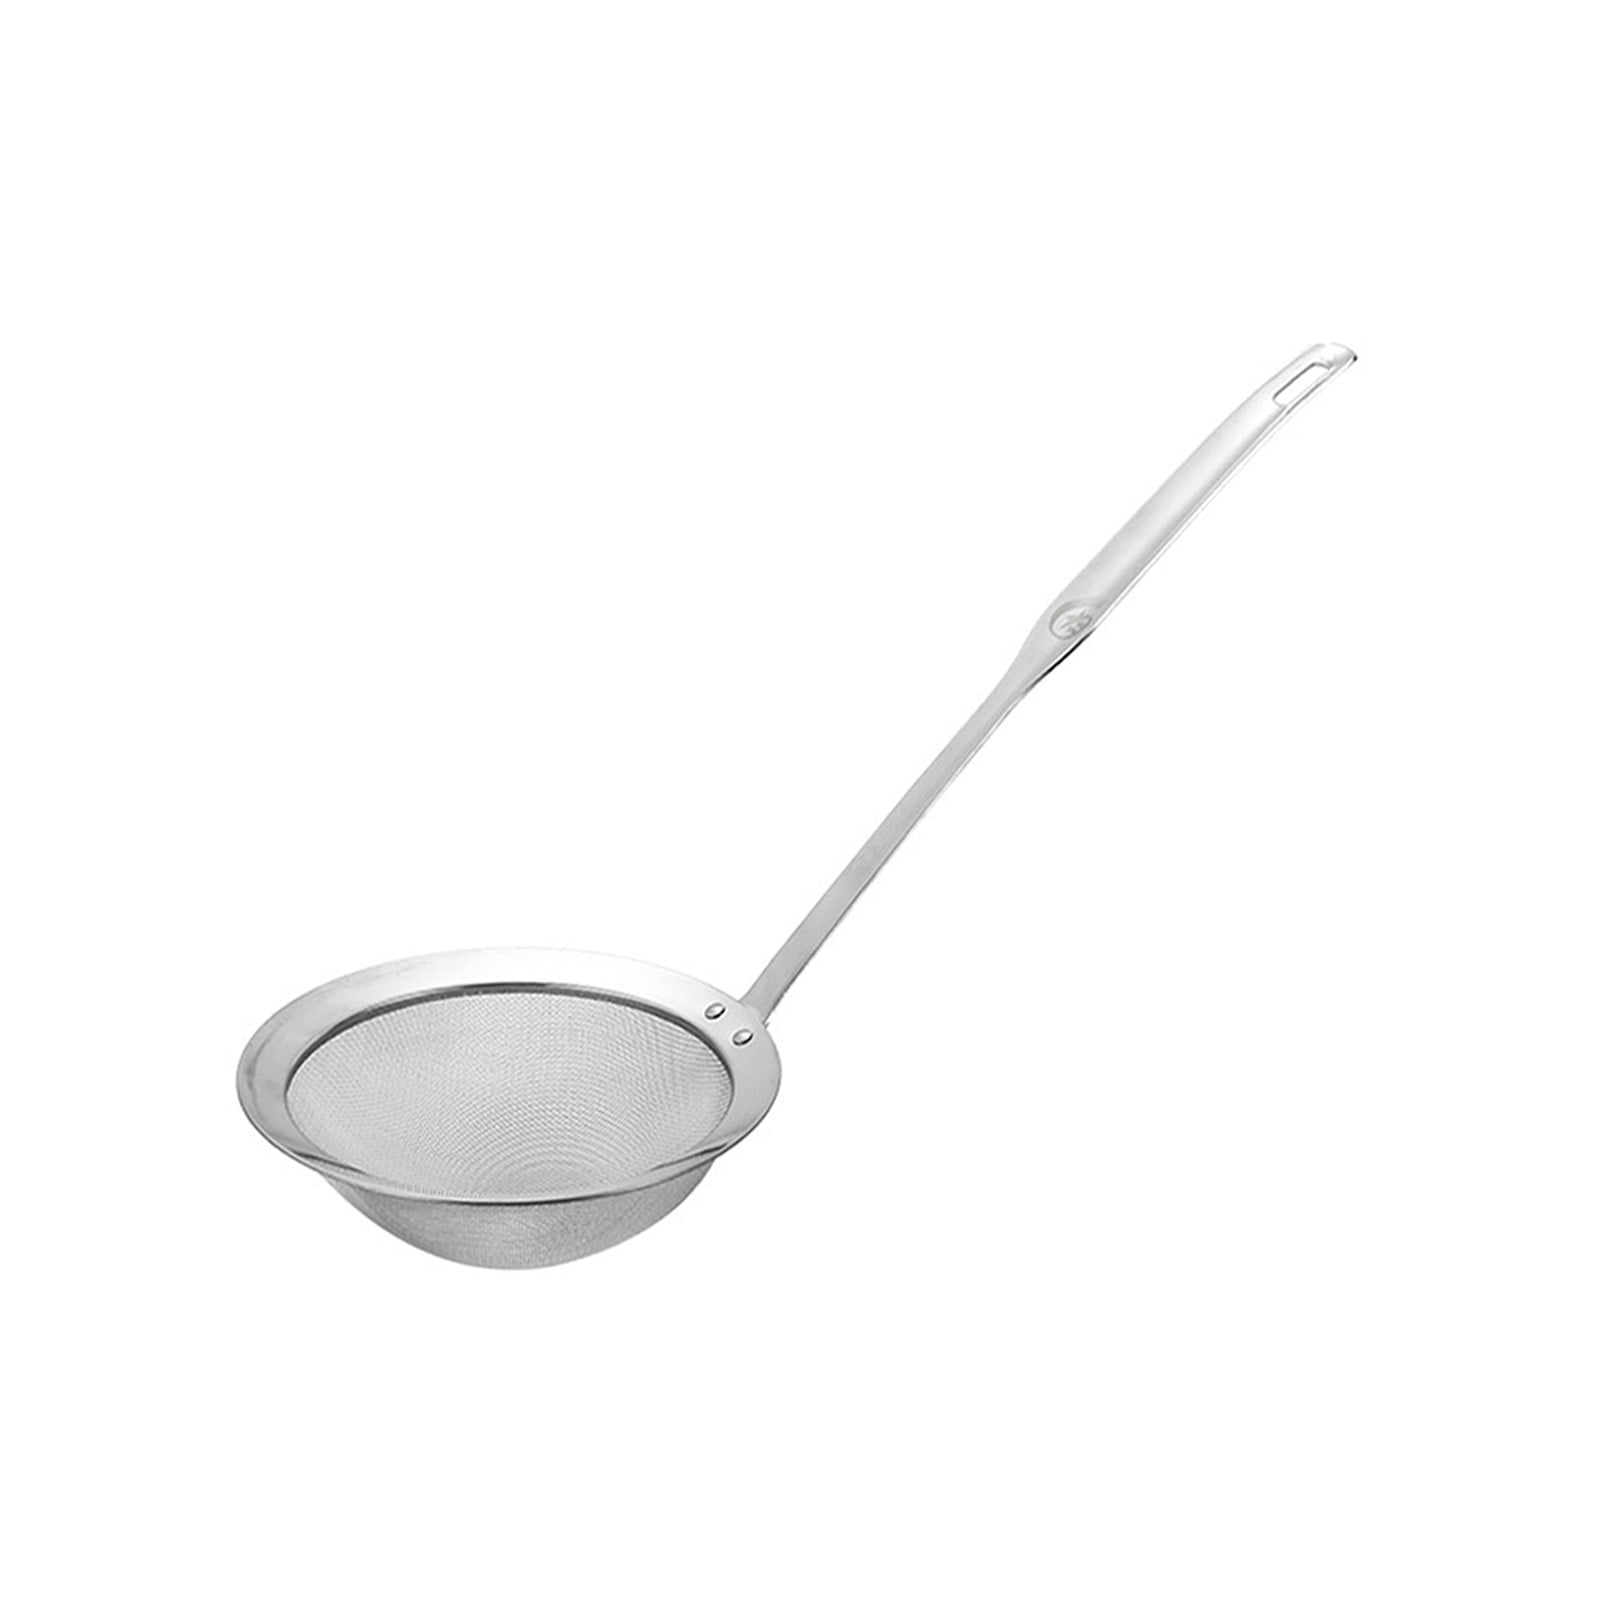 Stainless SKIMMER Spoon Kitchen Utensil Hot Pot Soup Fat Strainer Filter 10cm